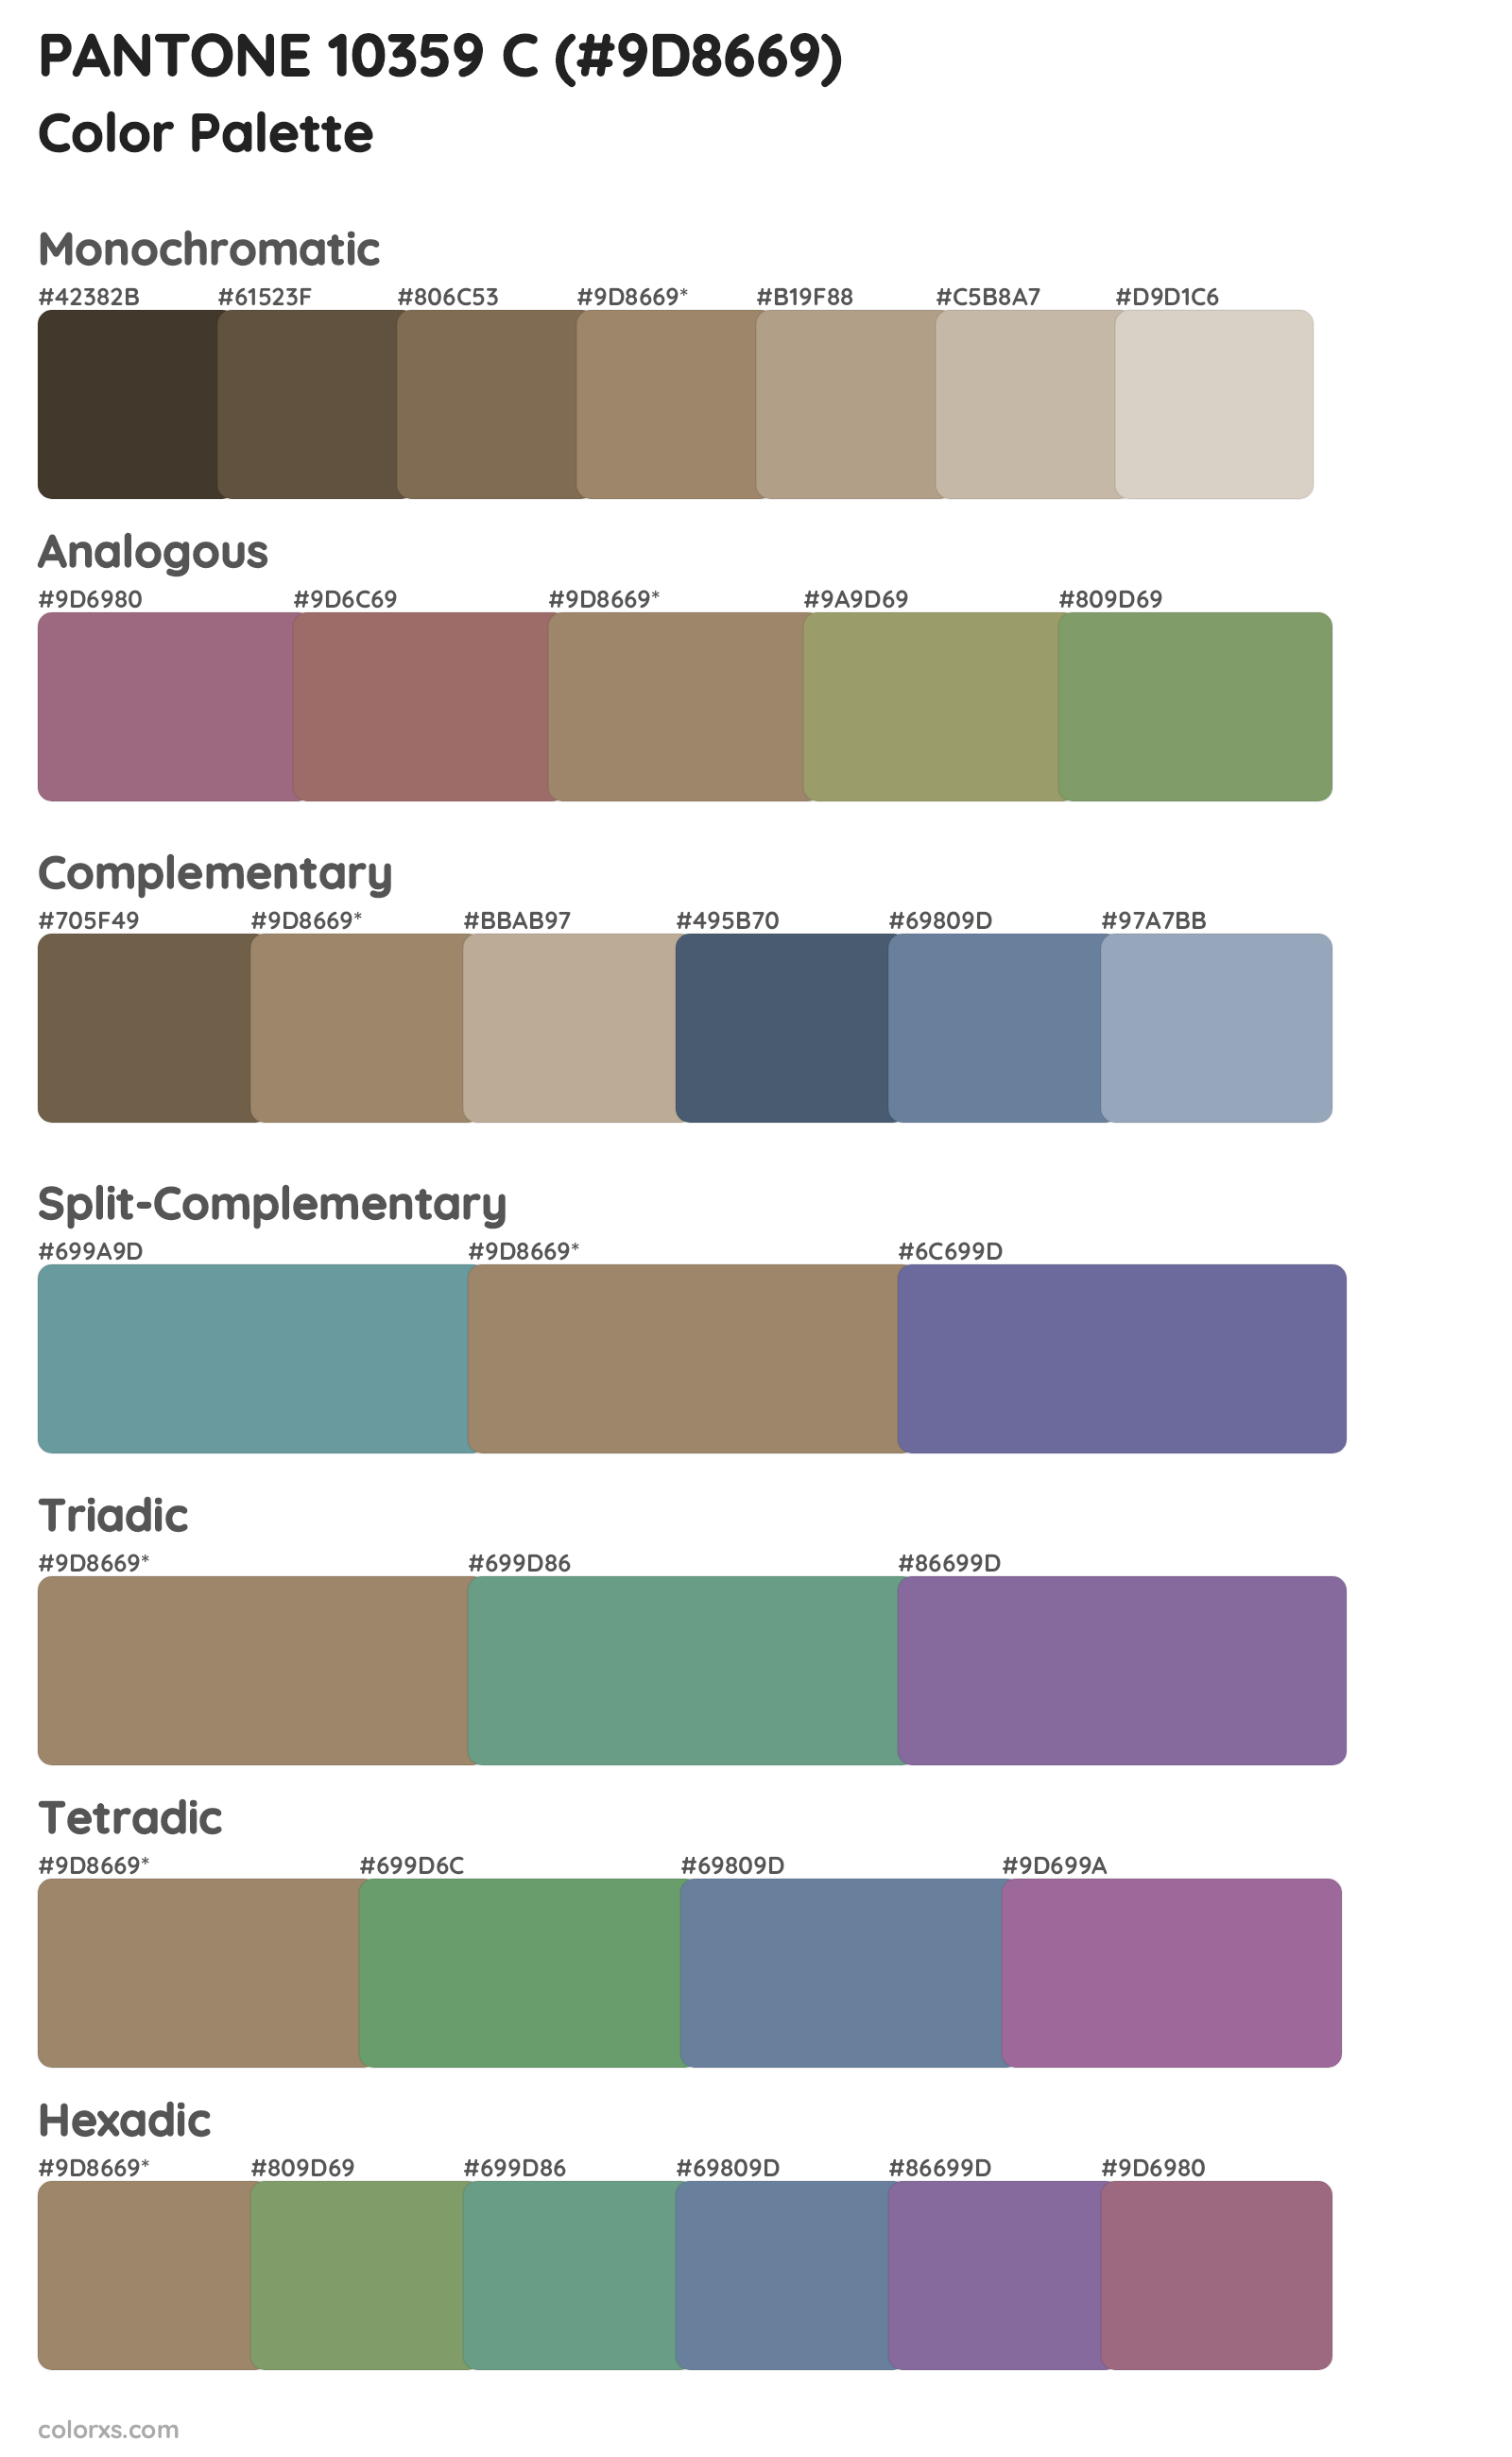 PANTONE 10359 C Color Scheme Palettes